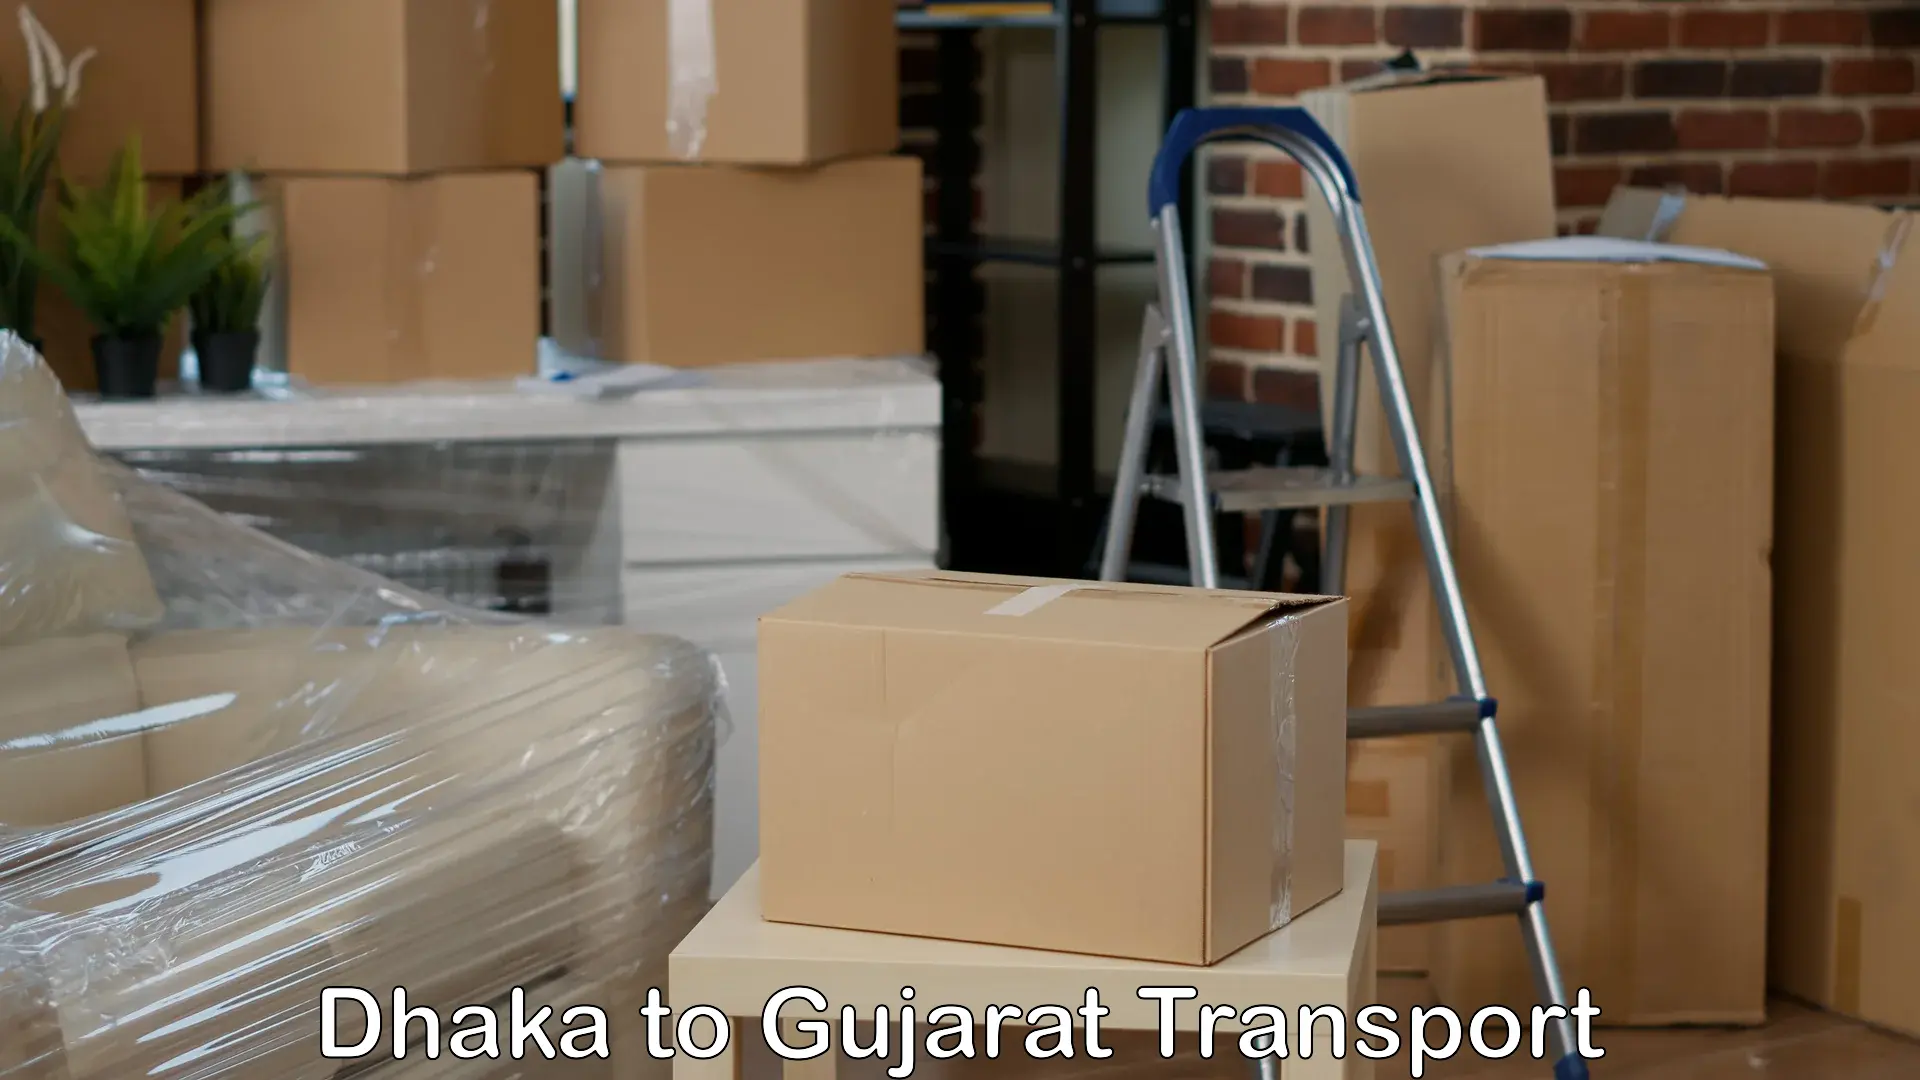 Furniture transport service Dhaka to Upleta